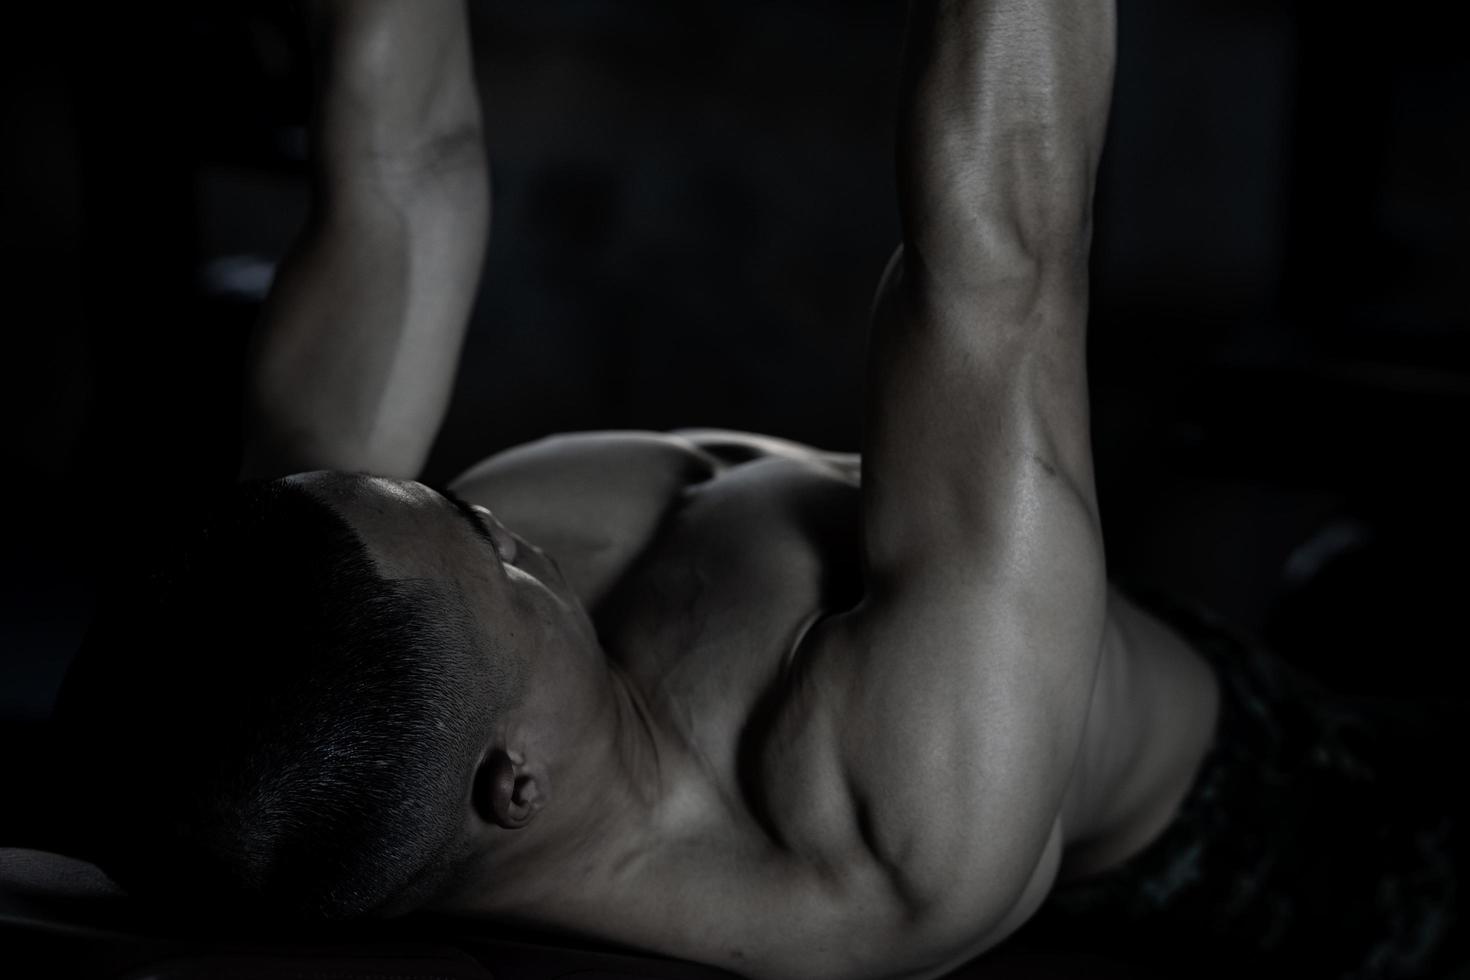 sexy cuerpo de muscular joven asiático hombre en gimnasia. concepto de salud cuidado, ejercicio aptitud física, fuerte músculo masa, cuerpo mejora, grasa reducción para de los hombres salud suplemento producto presentación. foto